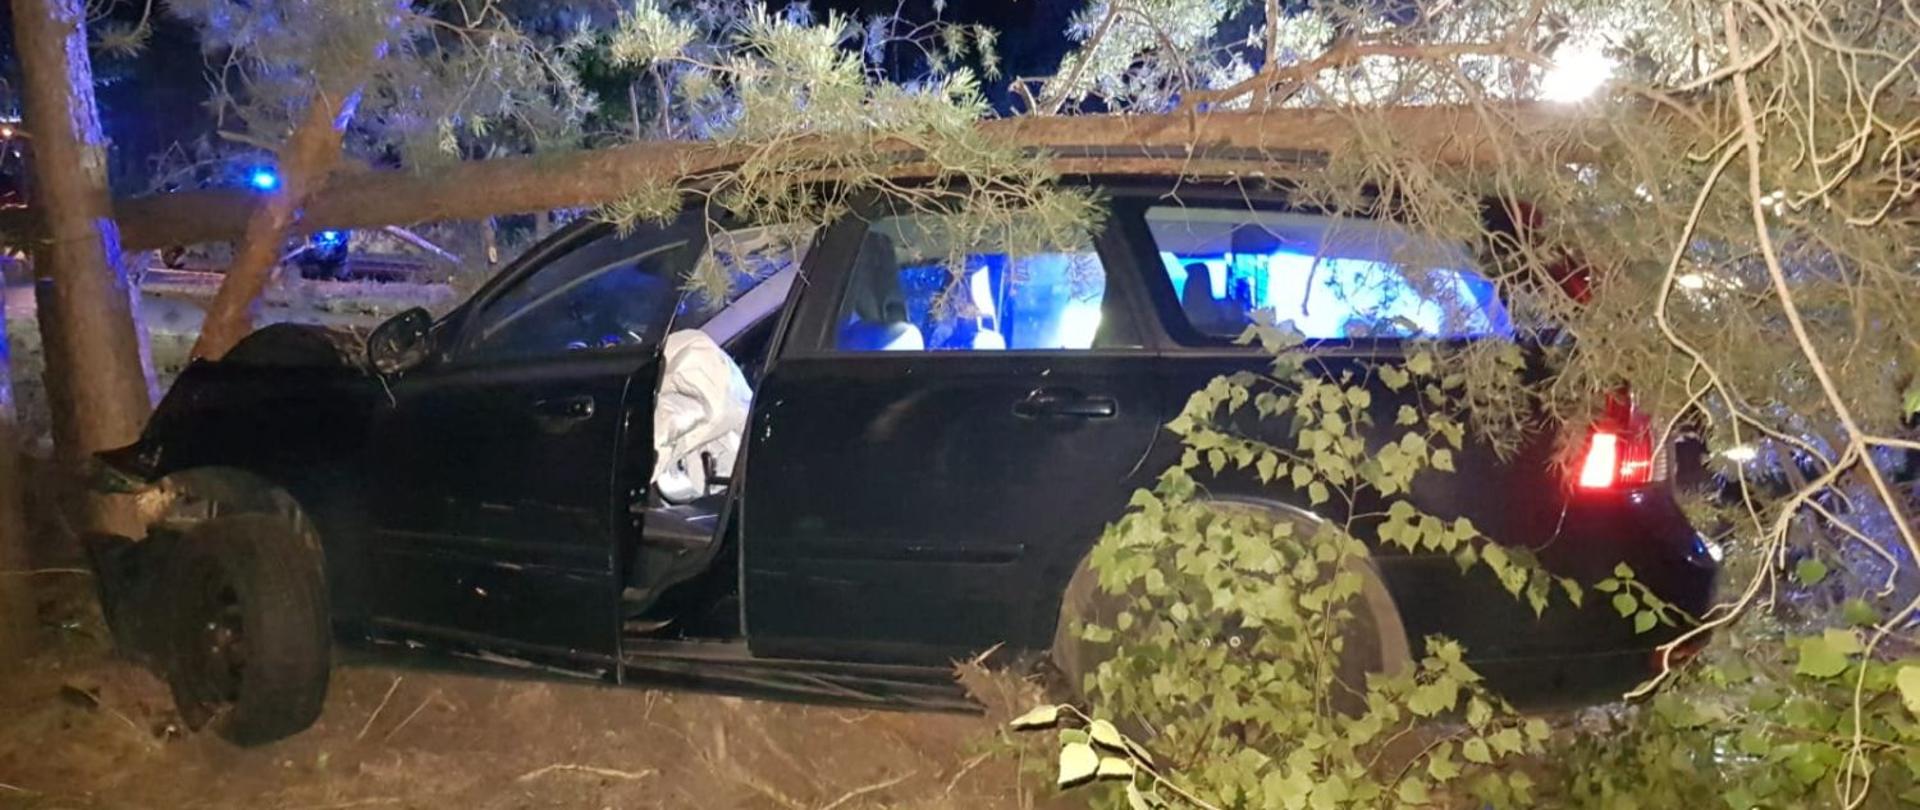 Na zdjęciu widać samochód osobowy typu kombi marki Volvo, który znajduje się poza drogą wojewódzką na poboczu. Wyniku nie zachowania bezpiecznej prędkości samochód zjechał na pobocze i uderzyła w drzewo, które uszkodziło przód pojazdu i dach.